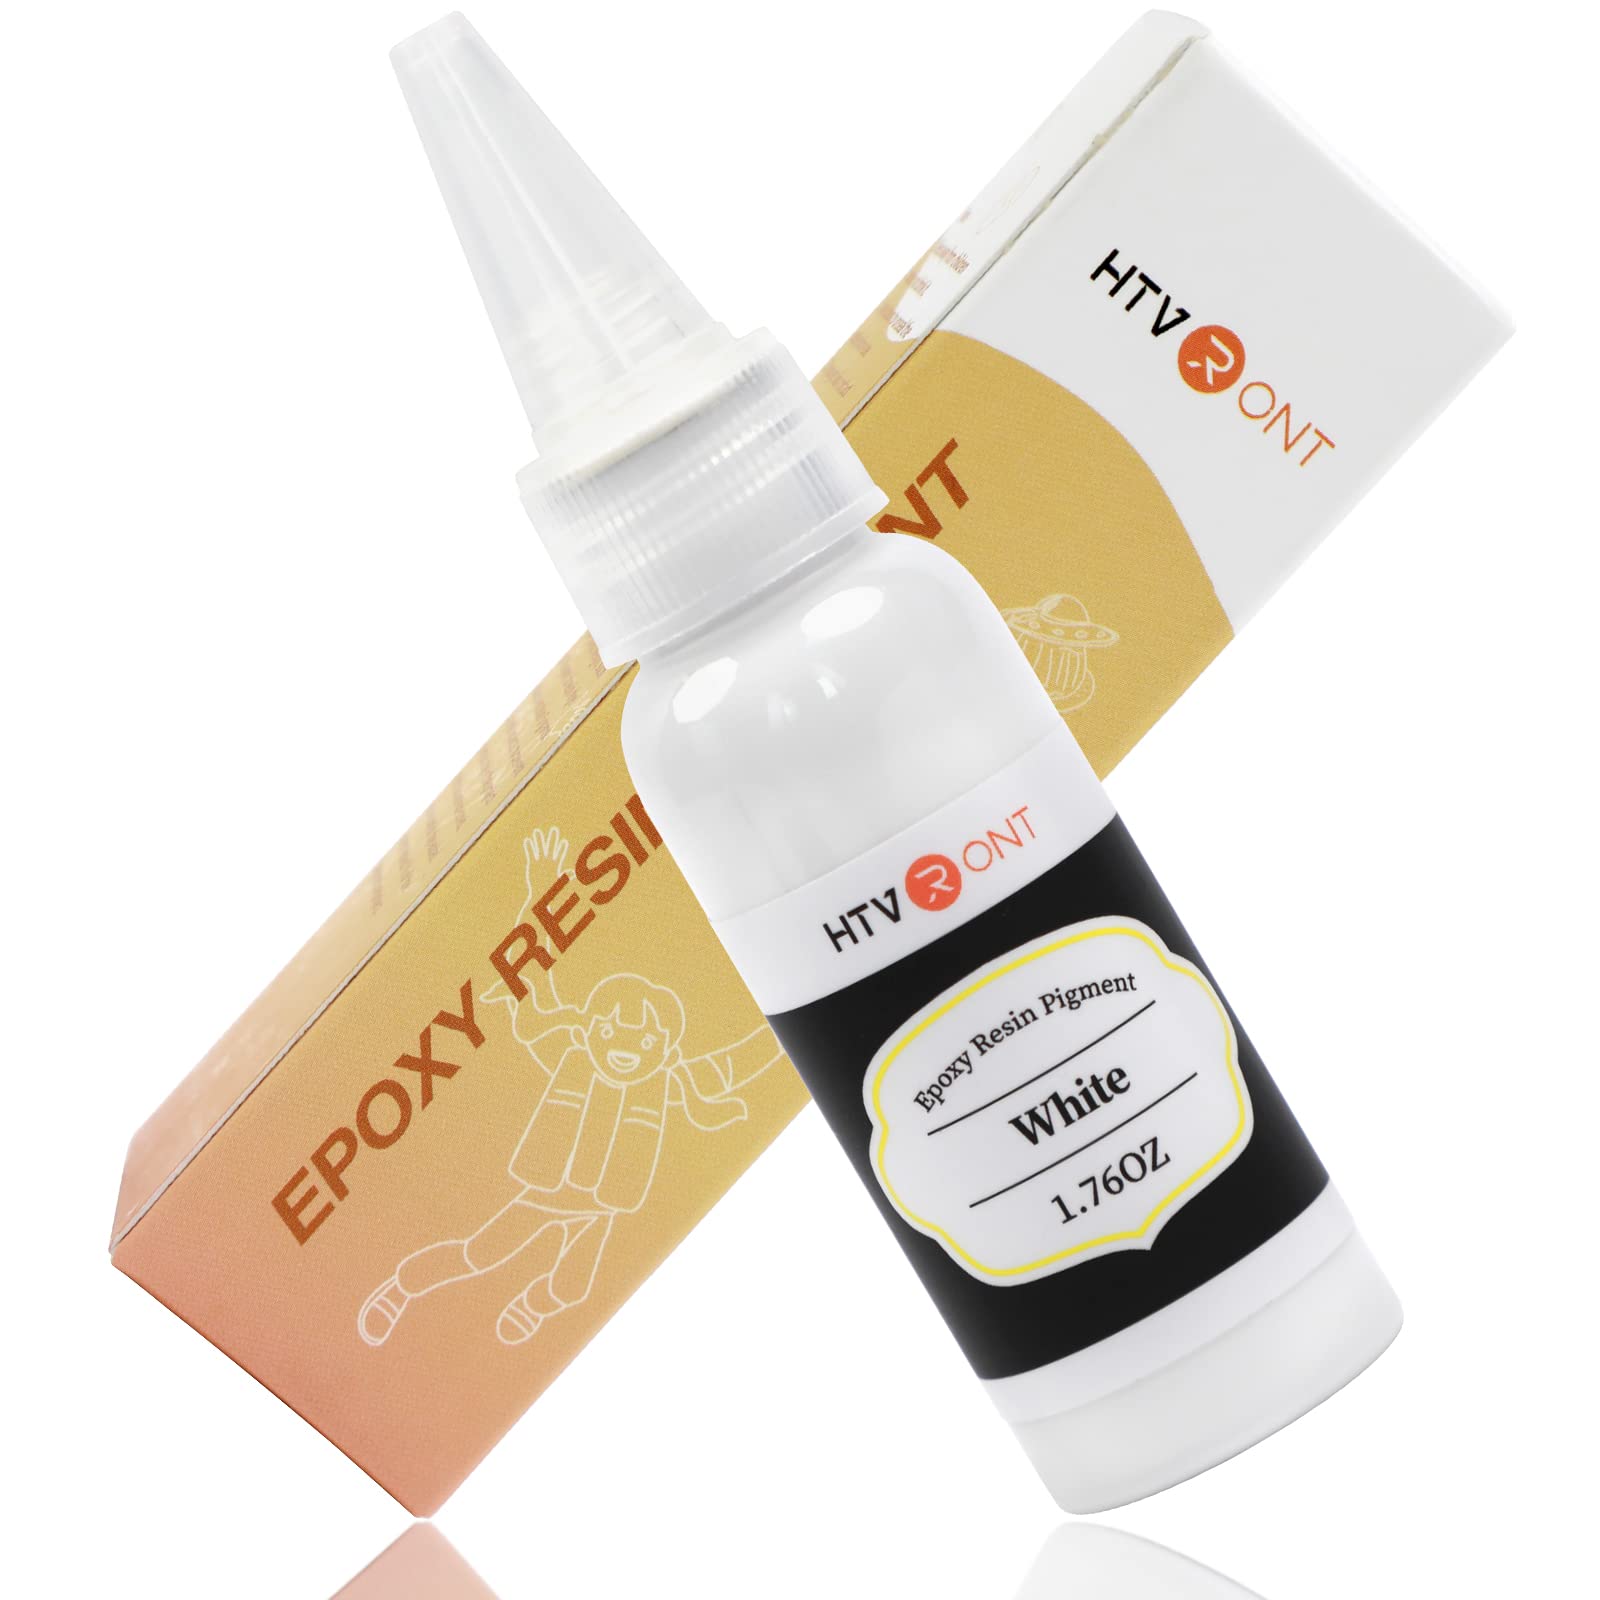 HTVRONT White Resin Pigment Paste - 1.76oz/50ml White Epoxy Dye